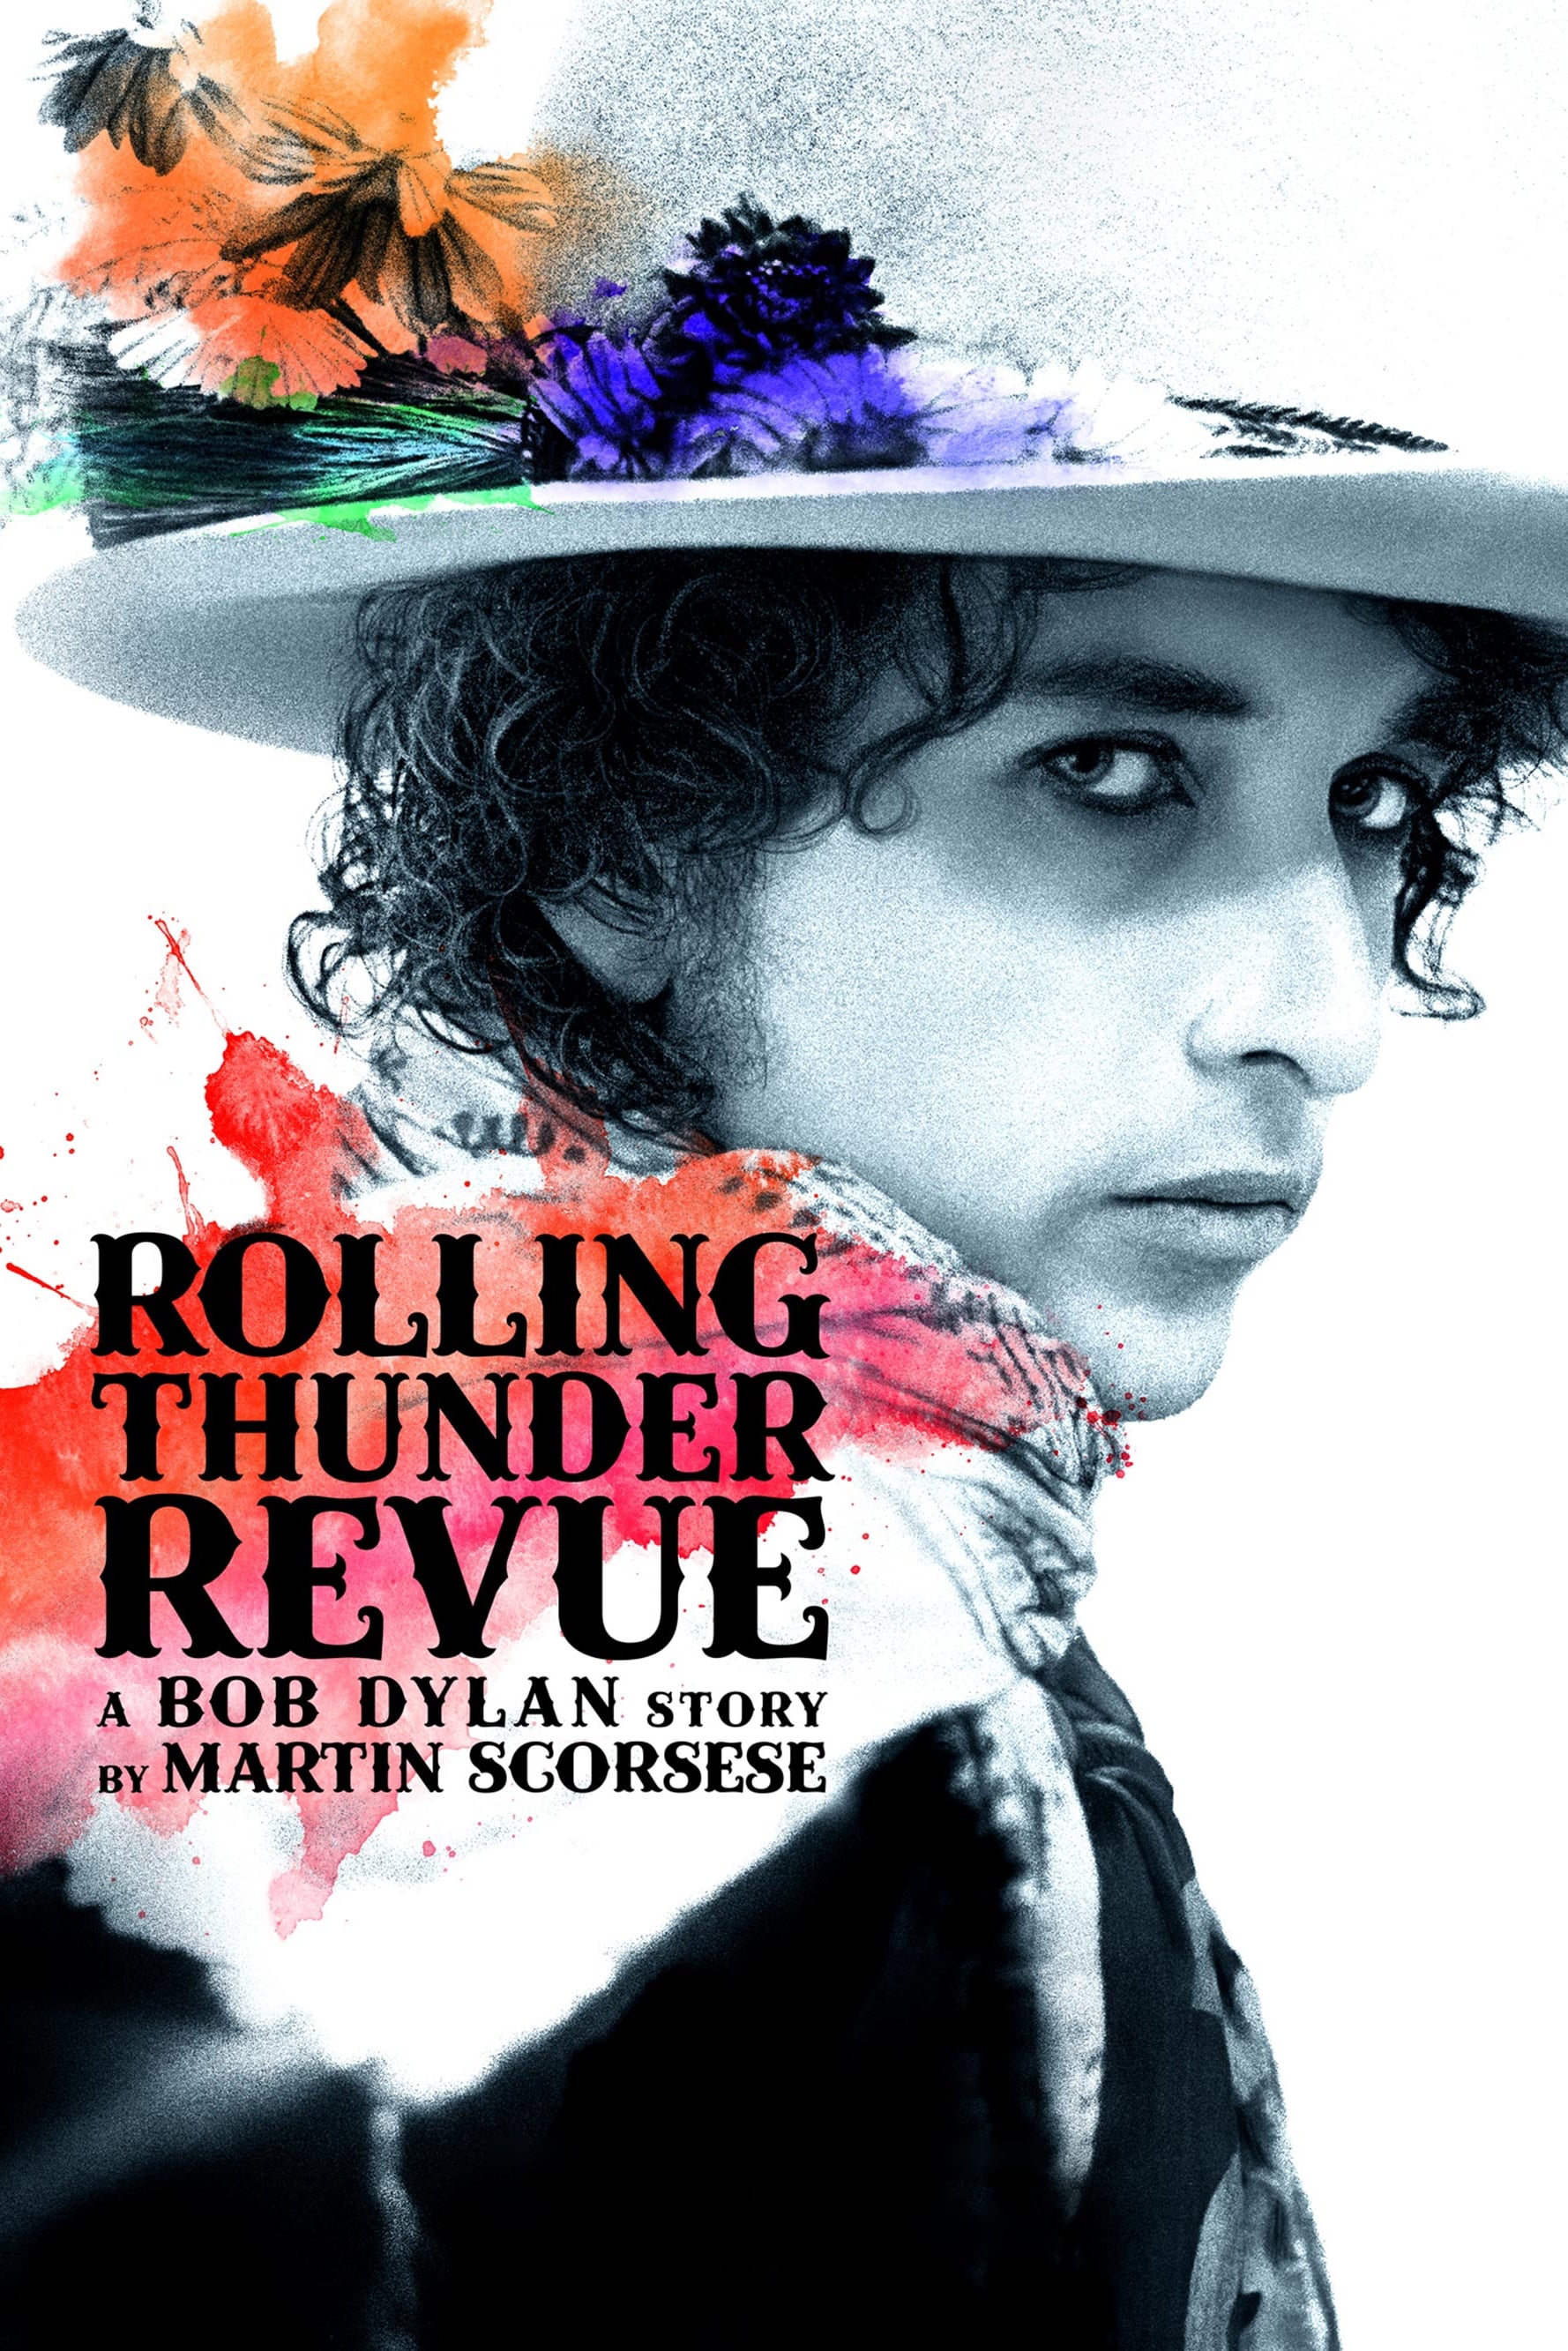 Rolling Thunder Revue: Câu chuyện của Bob Dylan kể bởi Martin Scorsese (Rolling Thunder Revue: A Bob Dylan Story by Martin Scorsese) [2019]